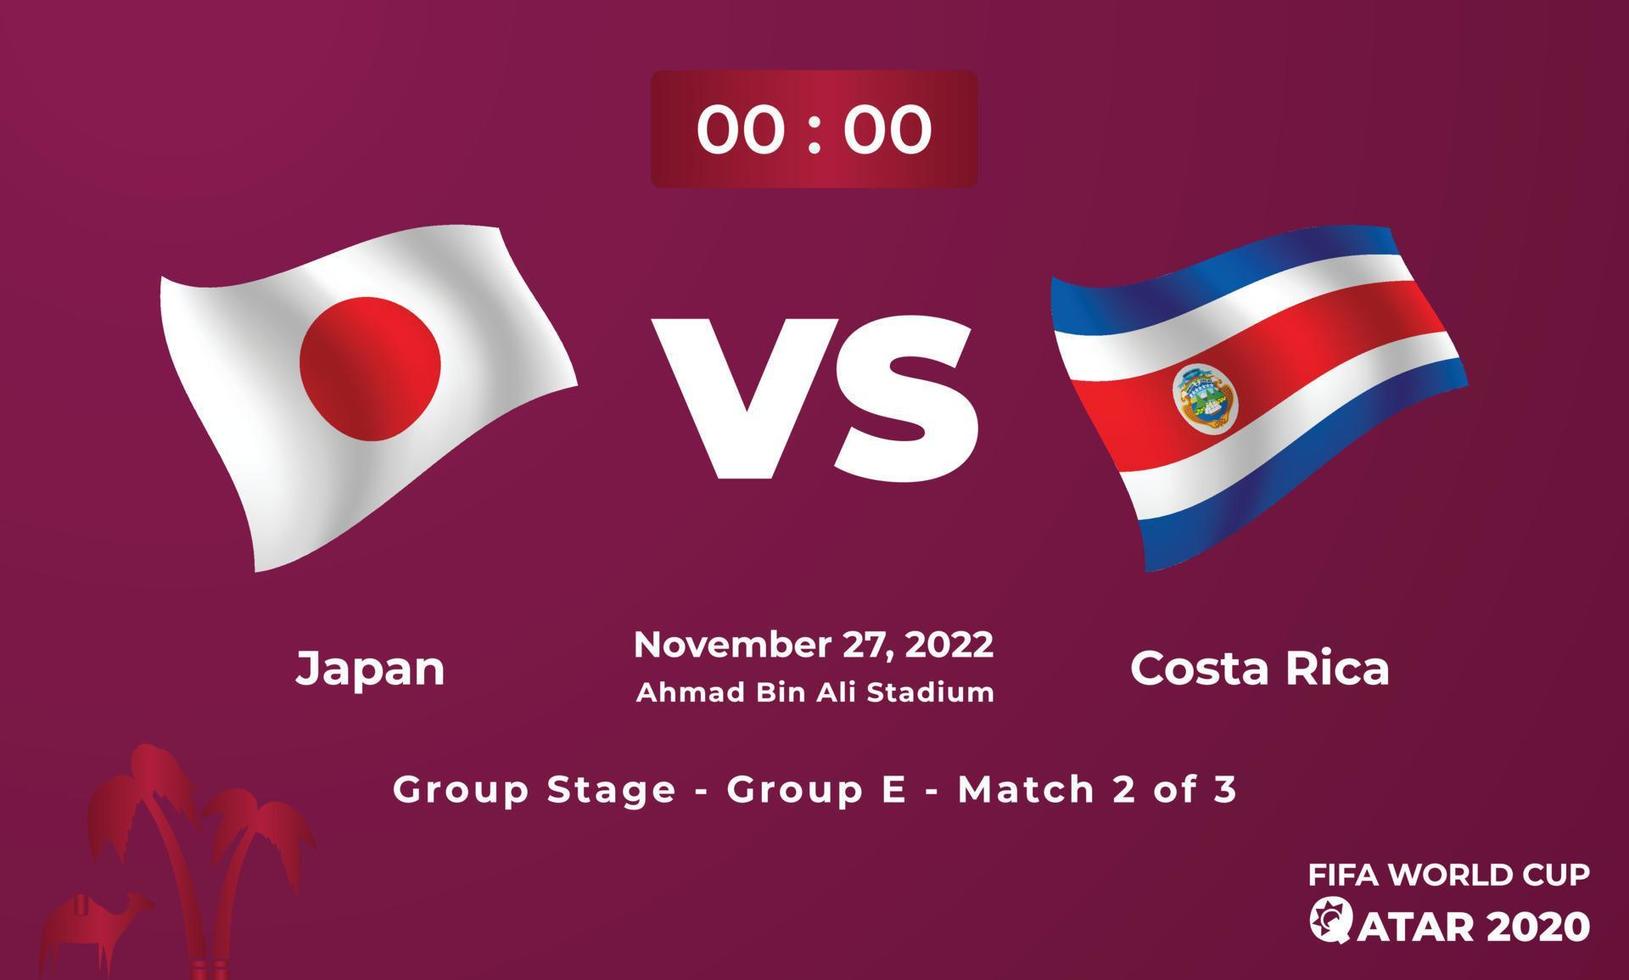 modelo de partida de futebol japão vs costa rica, copa do mundo da fifa no qatar 2022 vetor